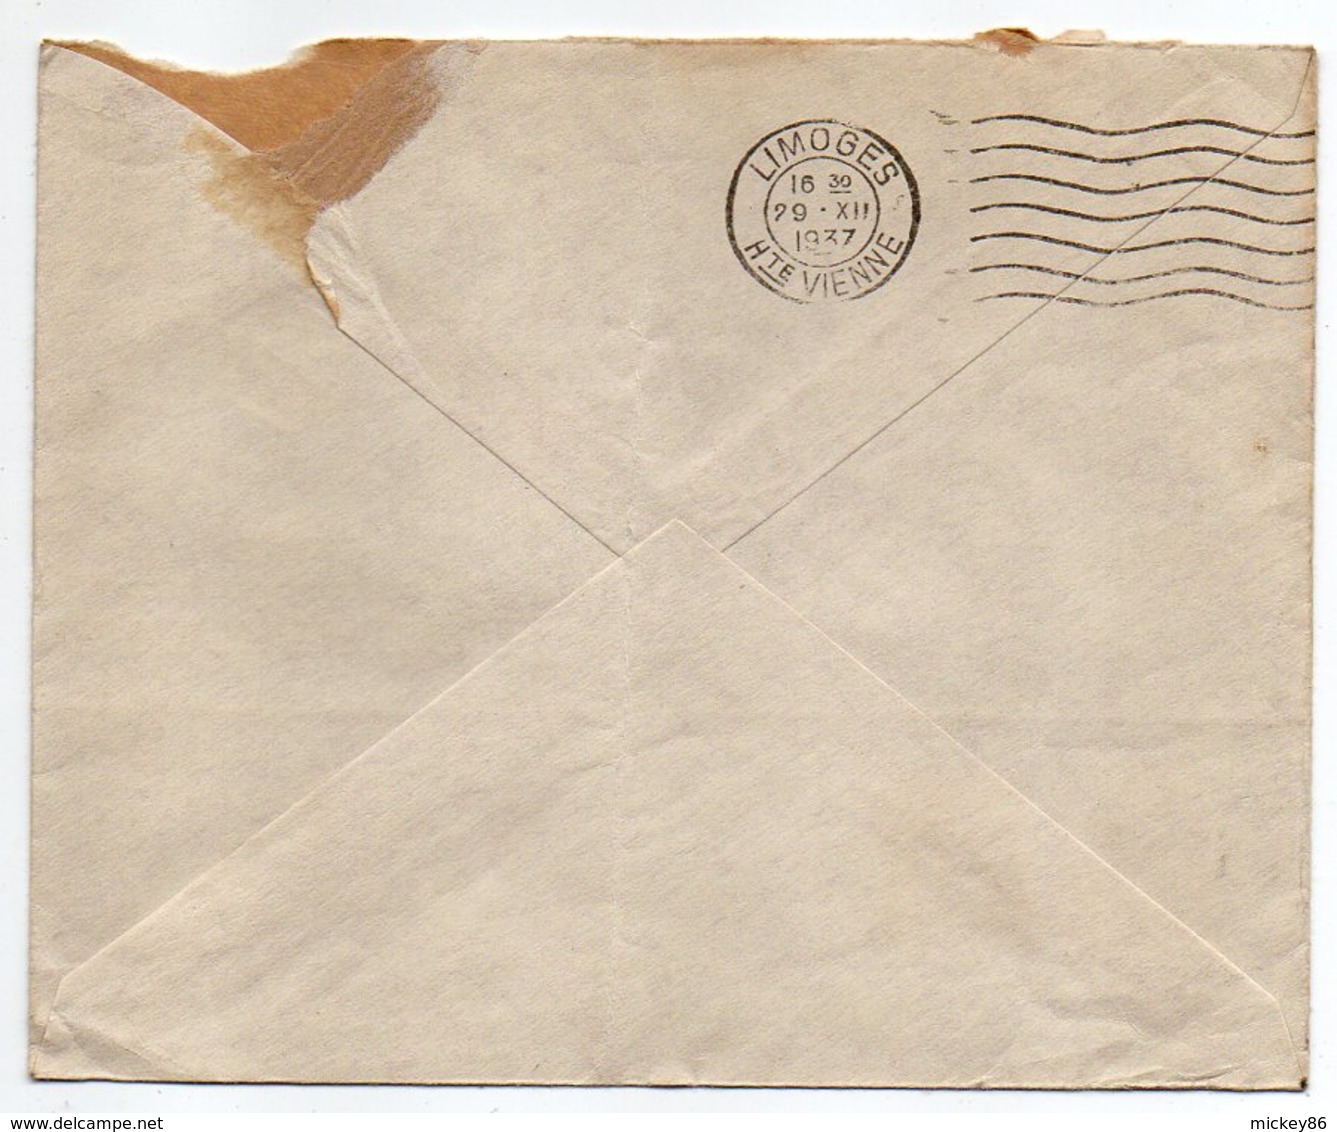 Suisse --1937--Lettre De BERNE   Pour LIMOGES (France) --cachets --enveloppe Personnalisée  Kiefer & Co - Storia Postale